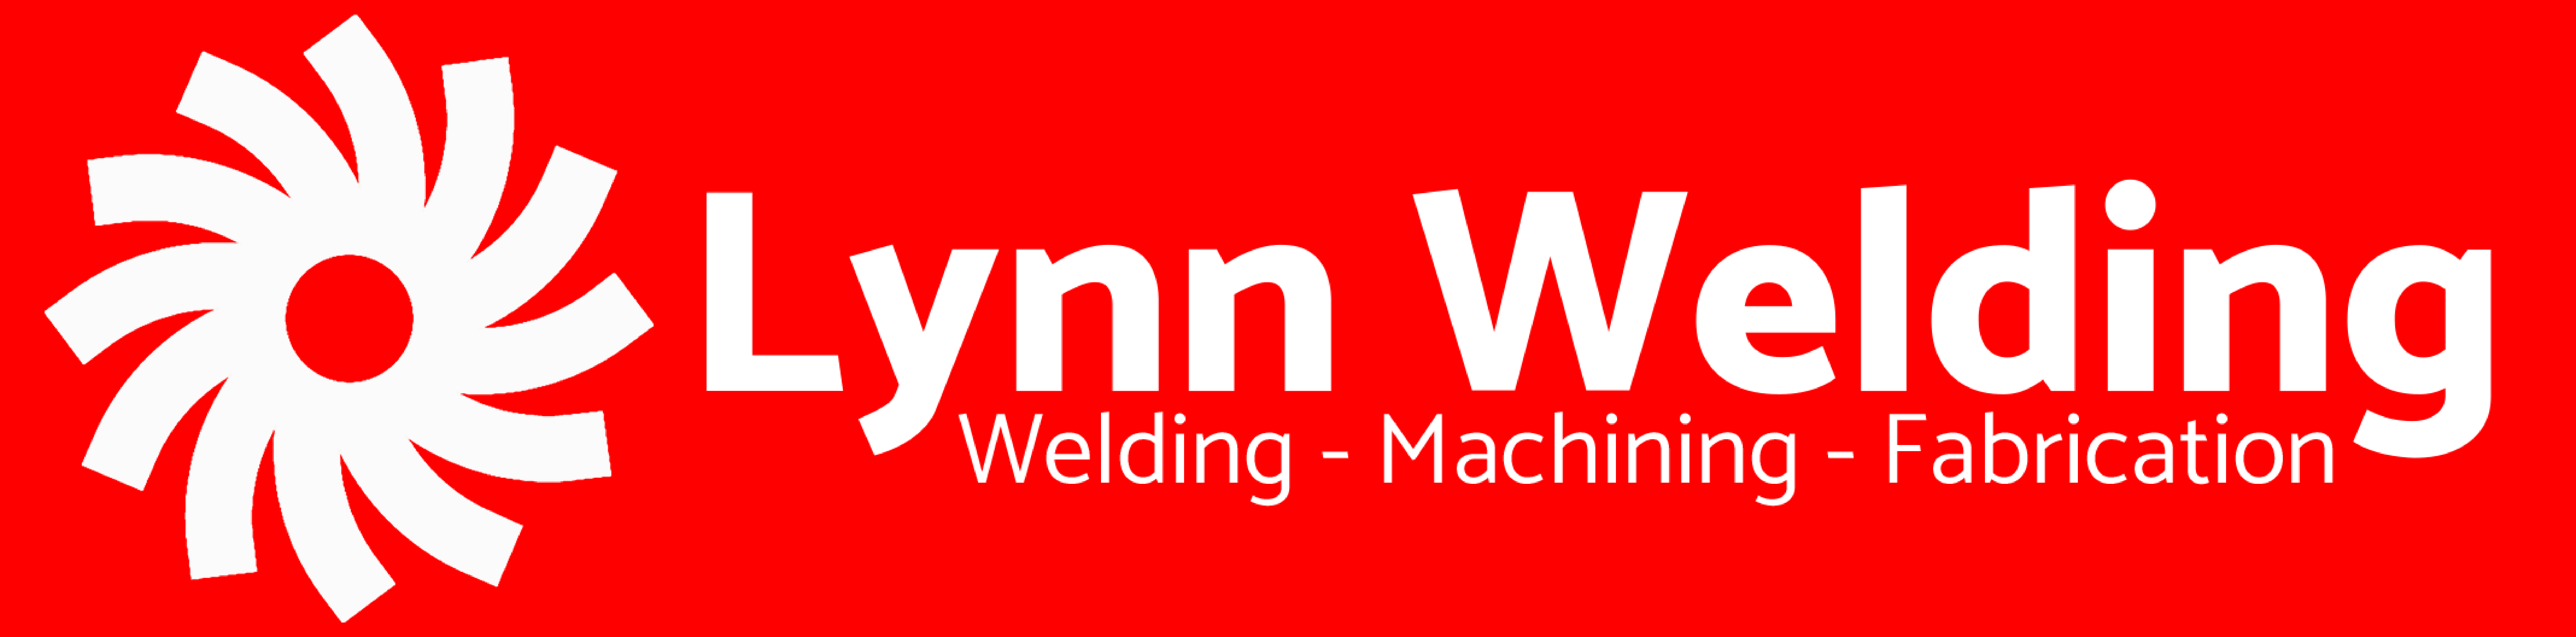 Lynn Welding Co. Inc. logo